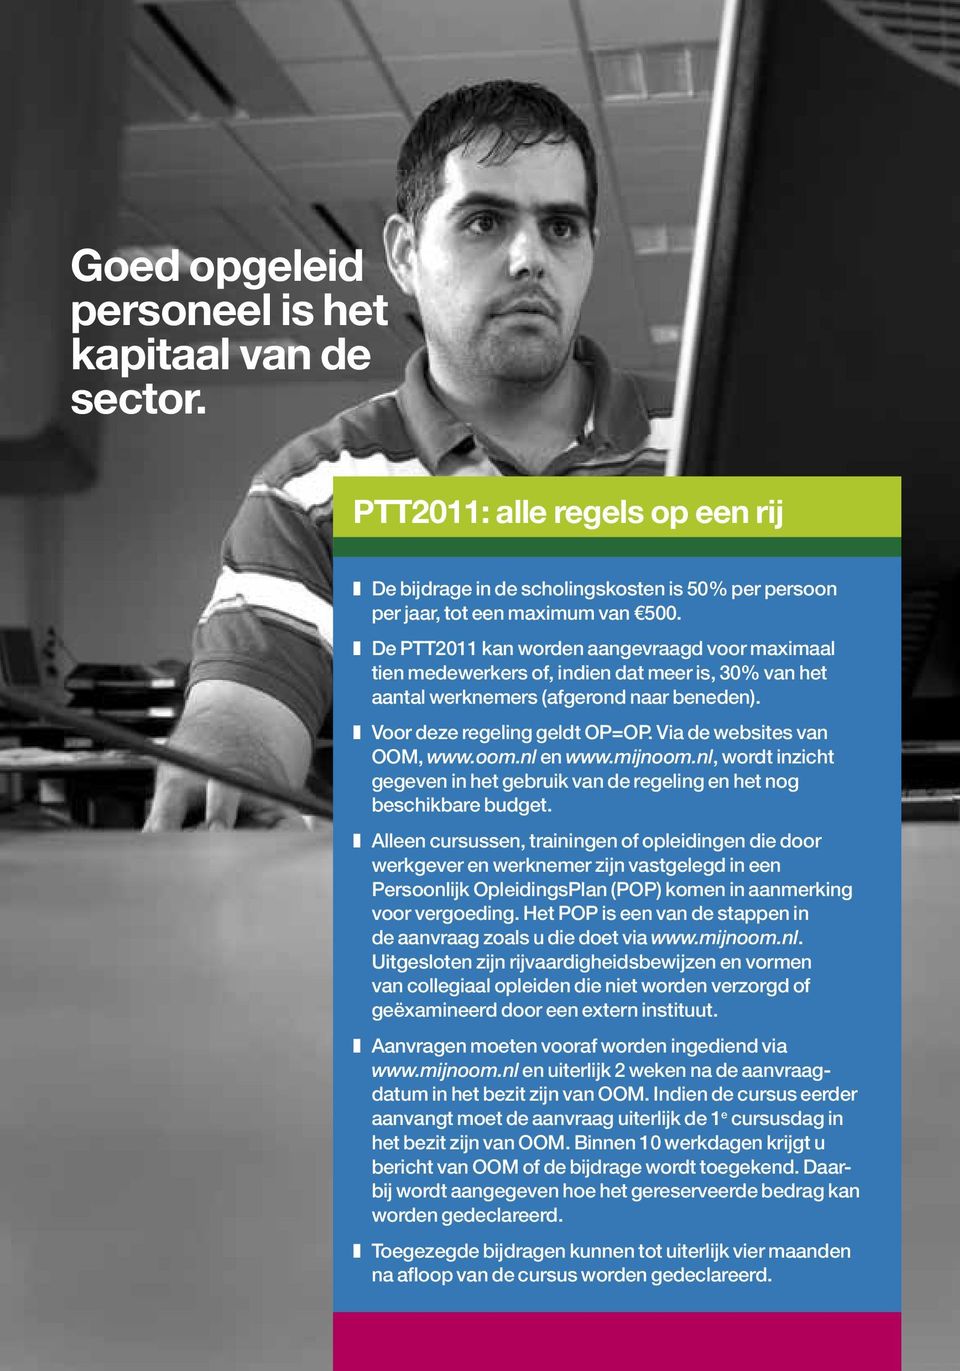 Via de websites van OOM, www.oom.nl en www.mijnoom.nl, wordt inzicht gegeven in het gebruik van de regeling en het nog beschikbare budget.